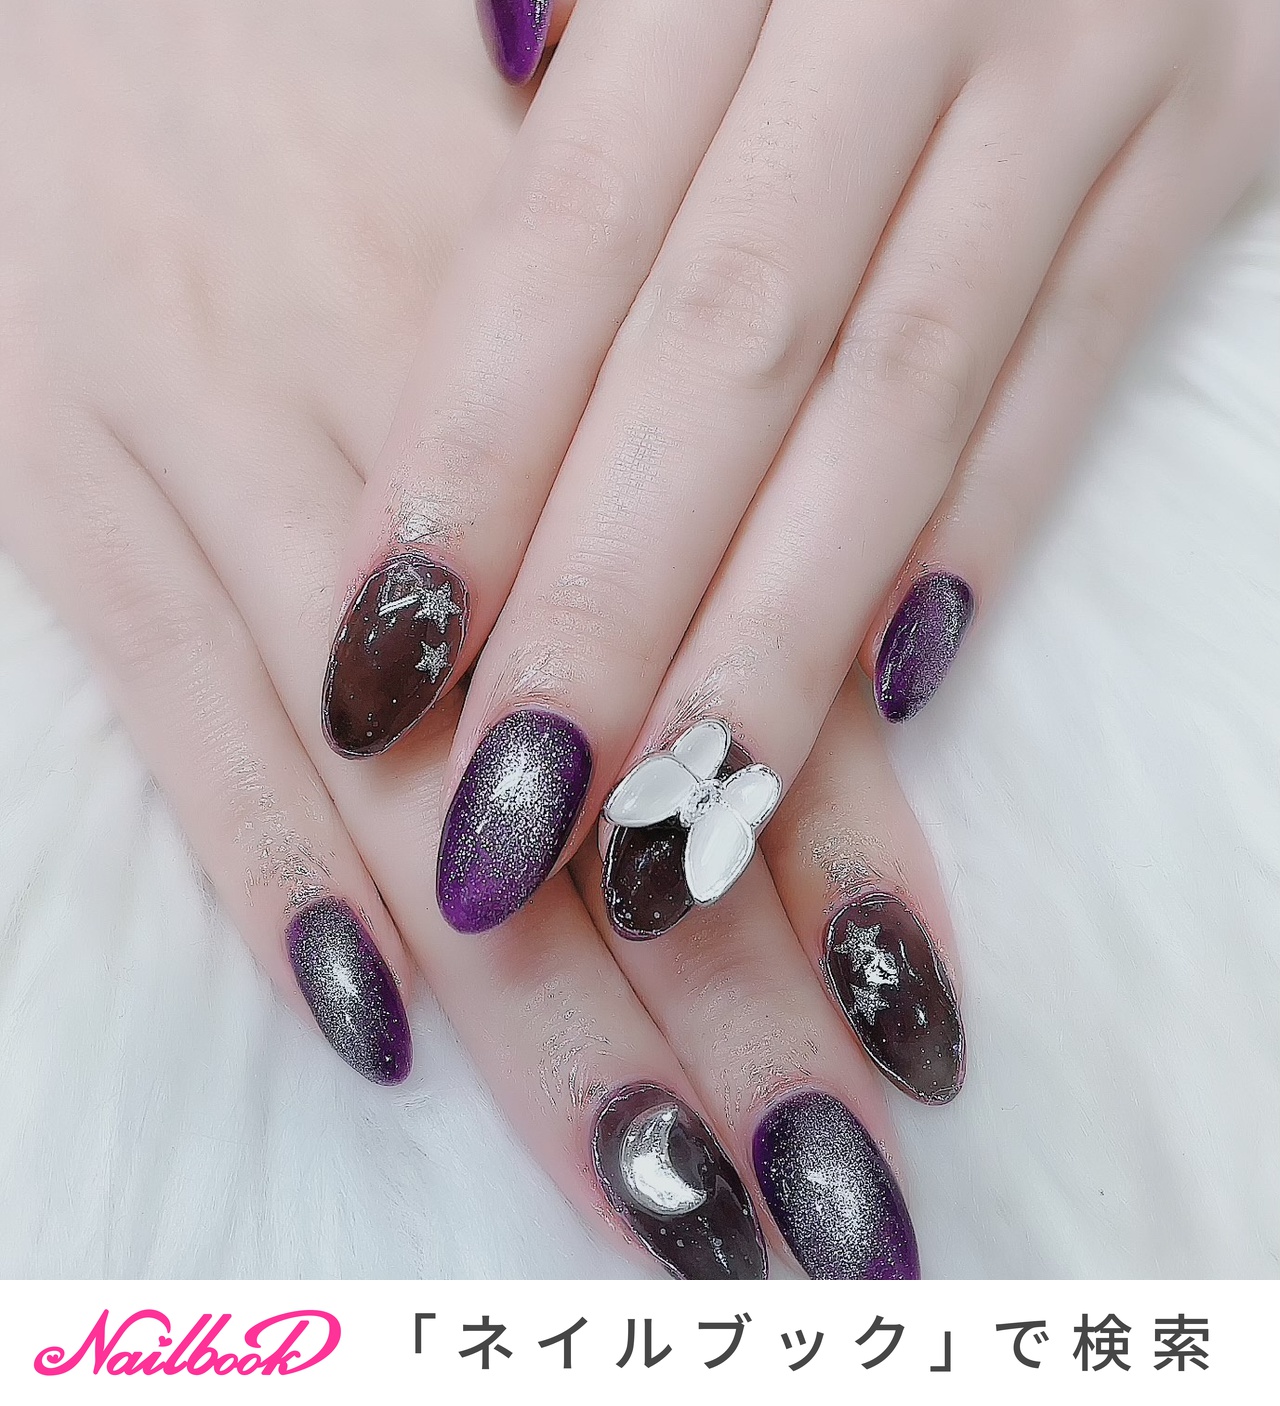 ネイル♡オーダーネイルハート編み上げリボン×ハートネイル♡紫×黒♡